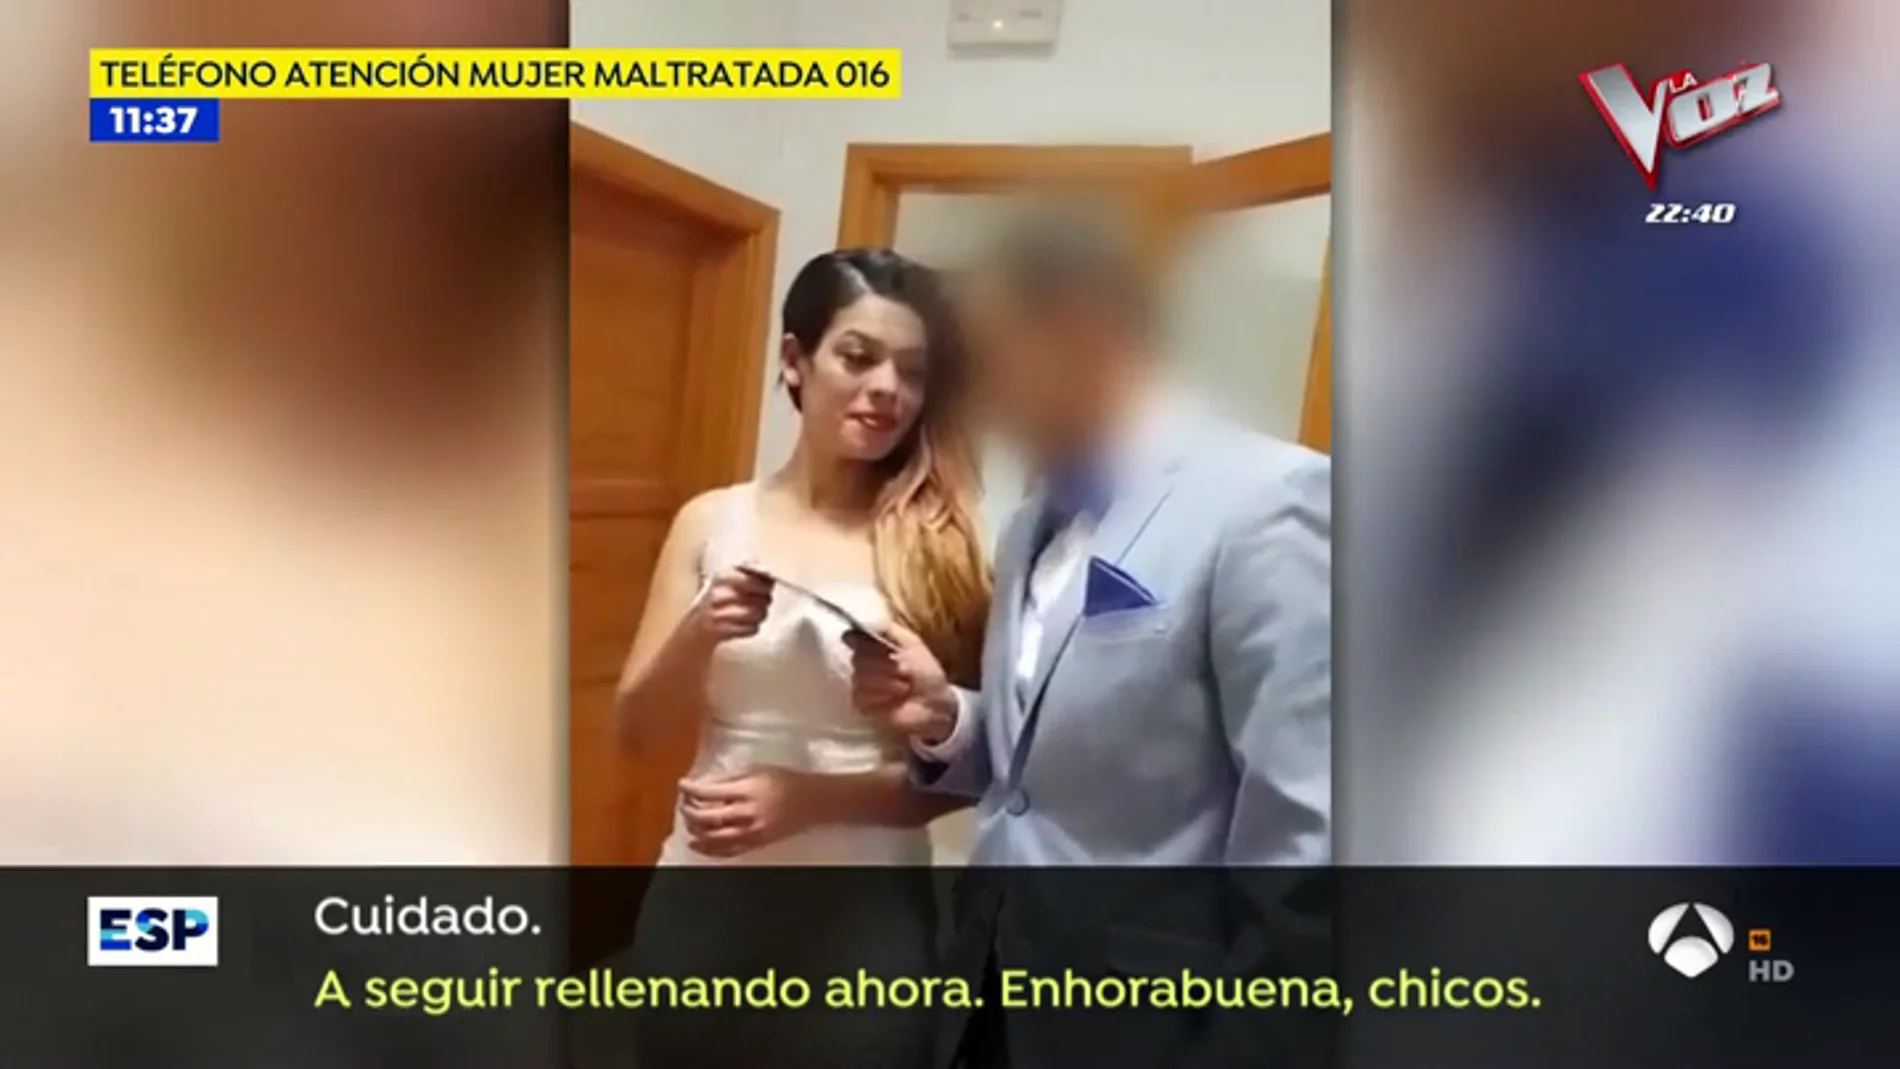 'Espejo Público' accede al vídeo de la boda de la mujer asesinada en Lanzarote en el que habla de no culminar el enlace